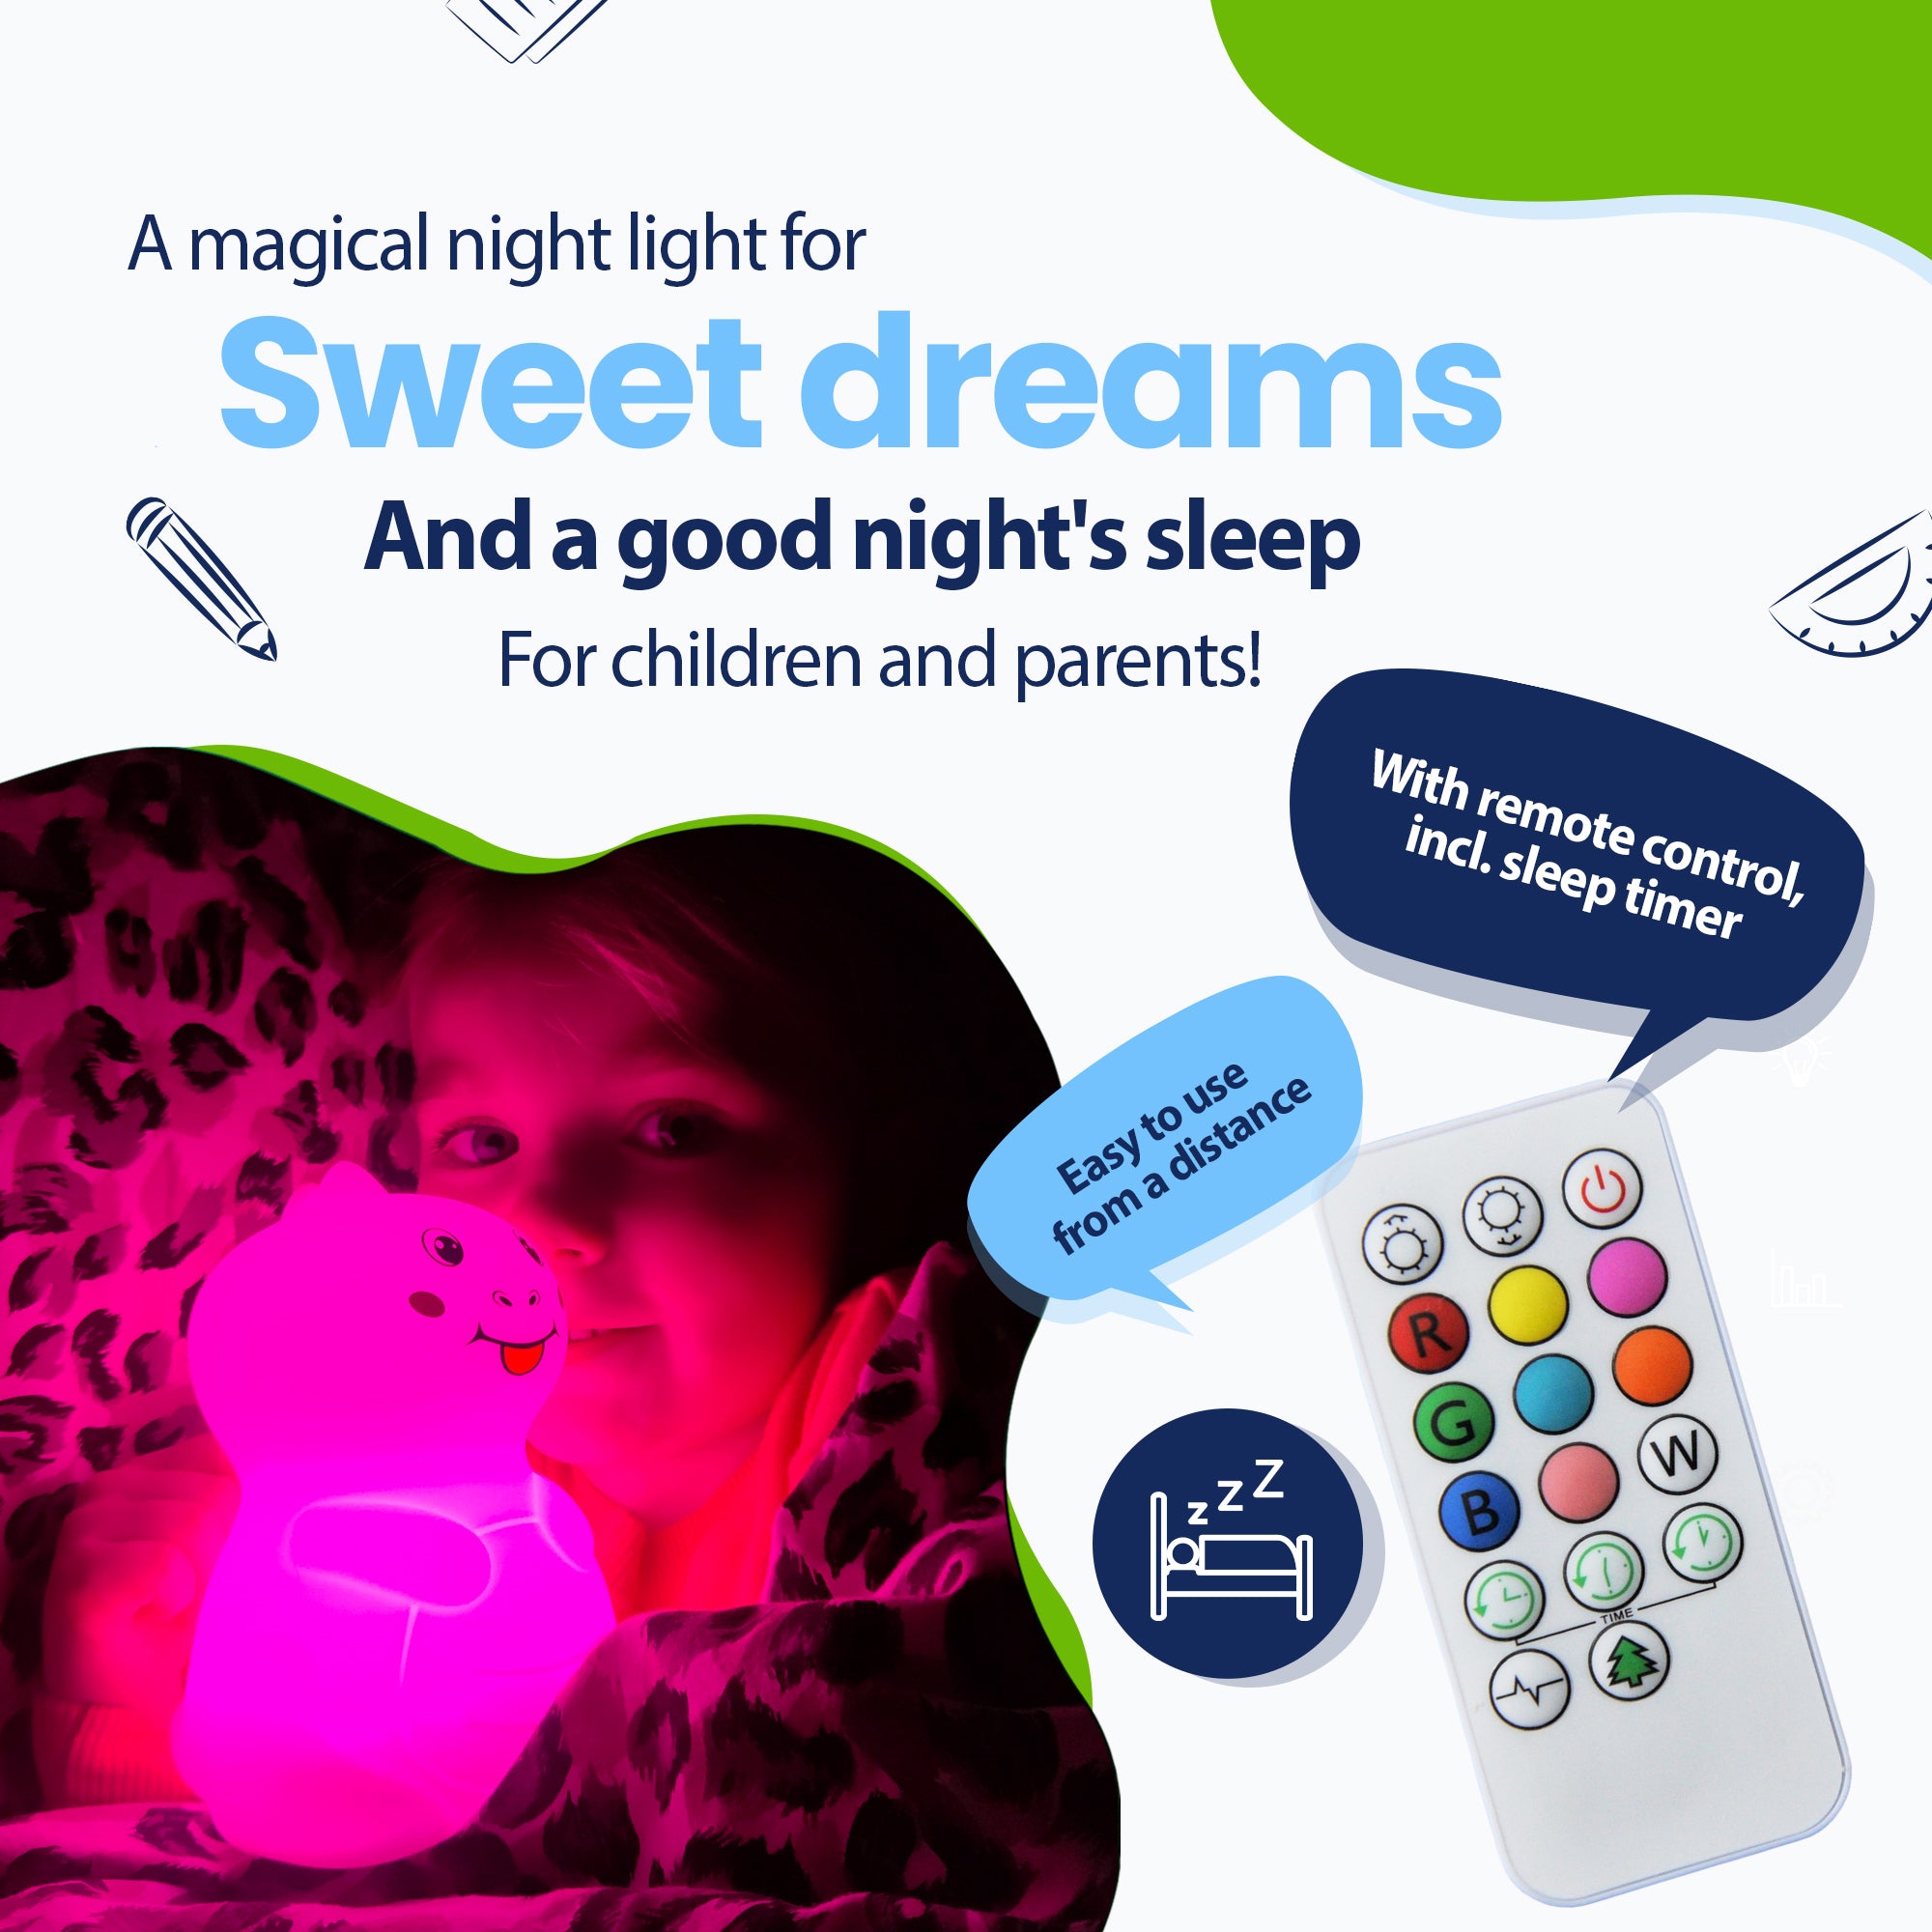 Et magisk natlys til søde drømme og en sund nattesøvn for børn og forældre - med fjernbetjening inklusive sleep-timer - nemt på afstand